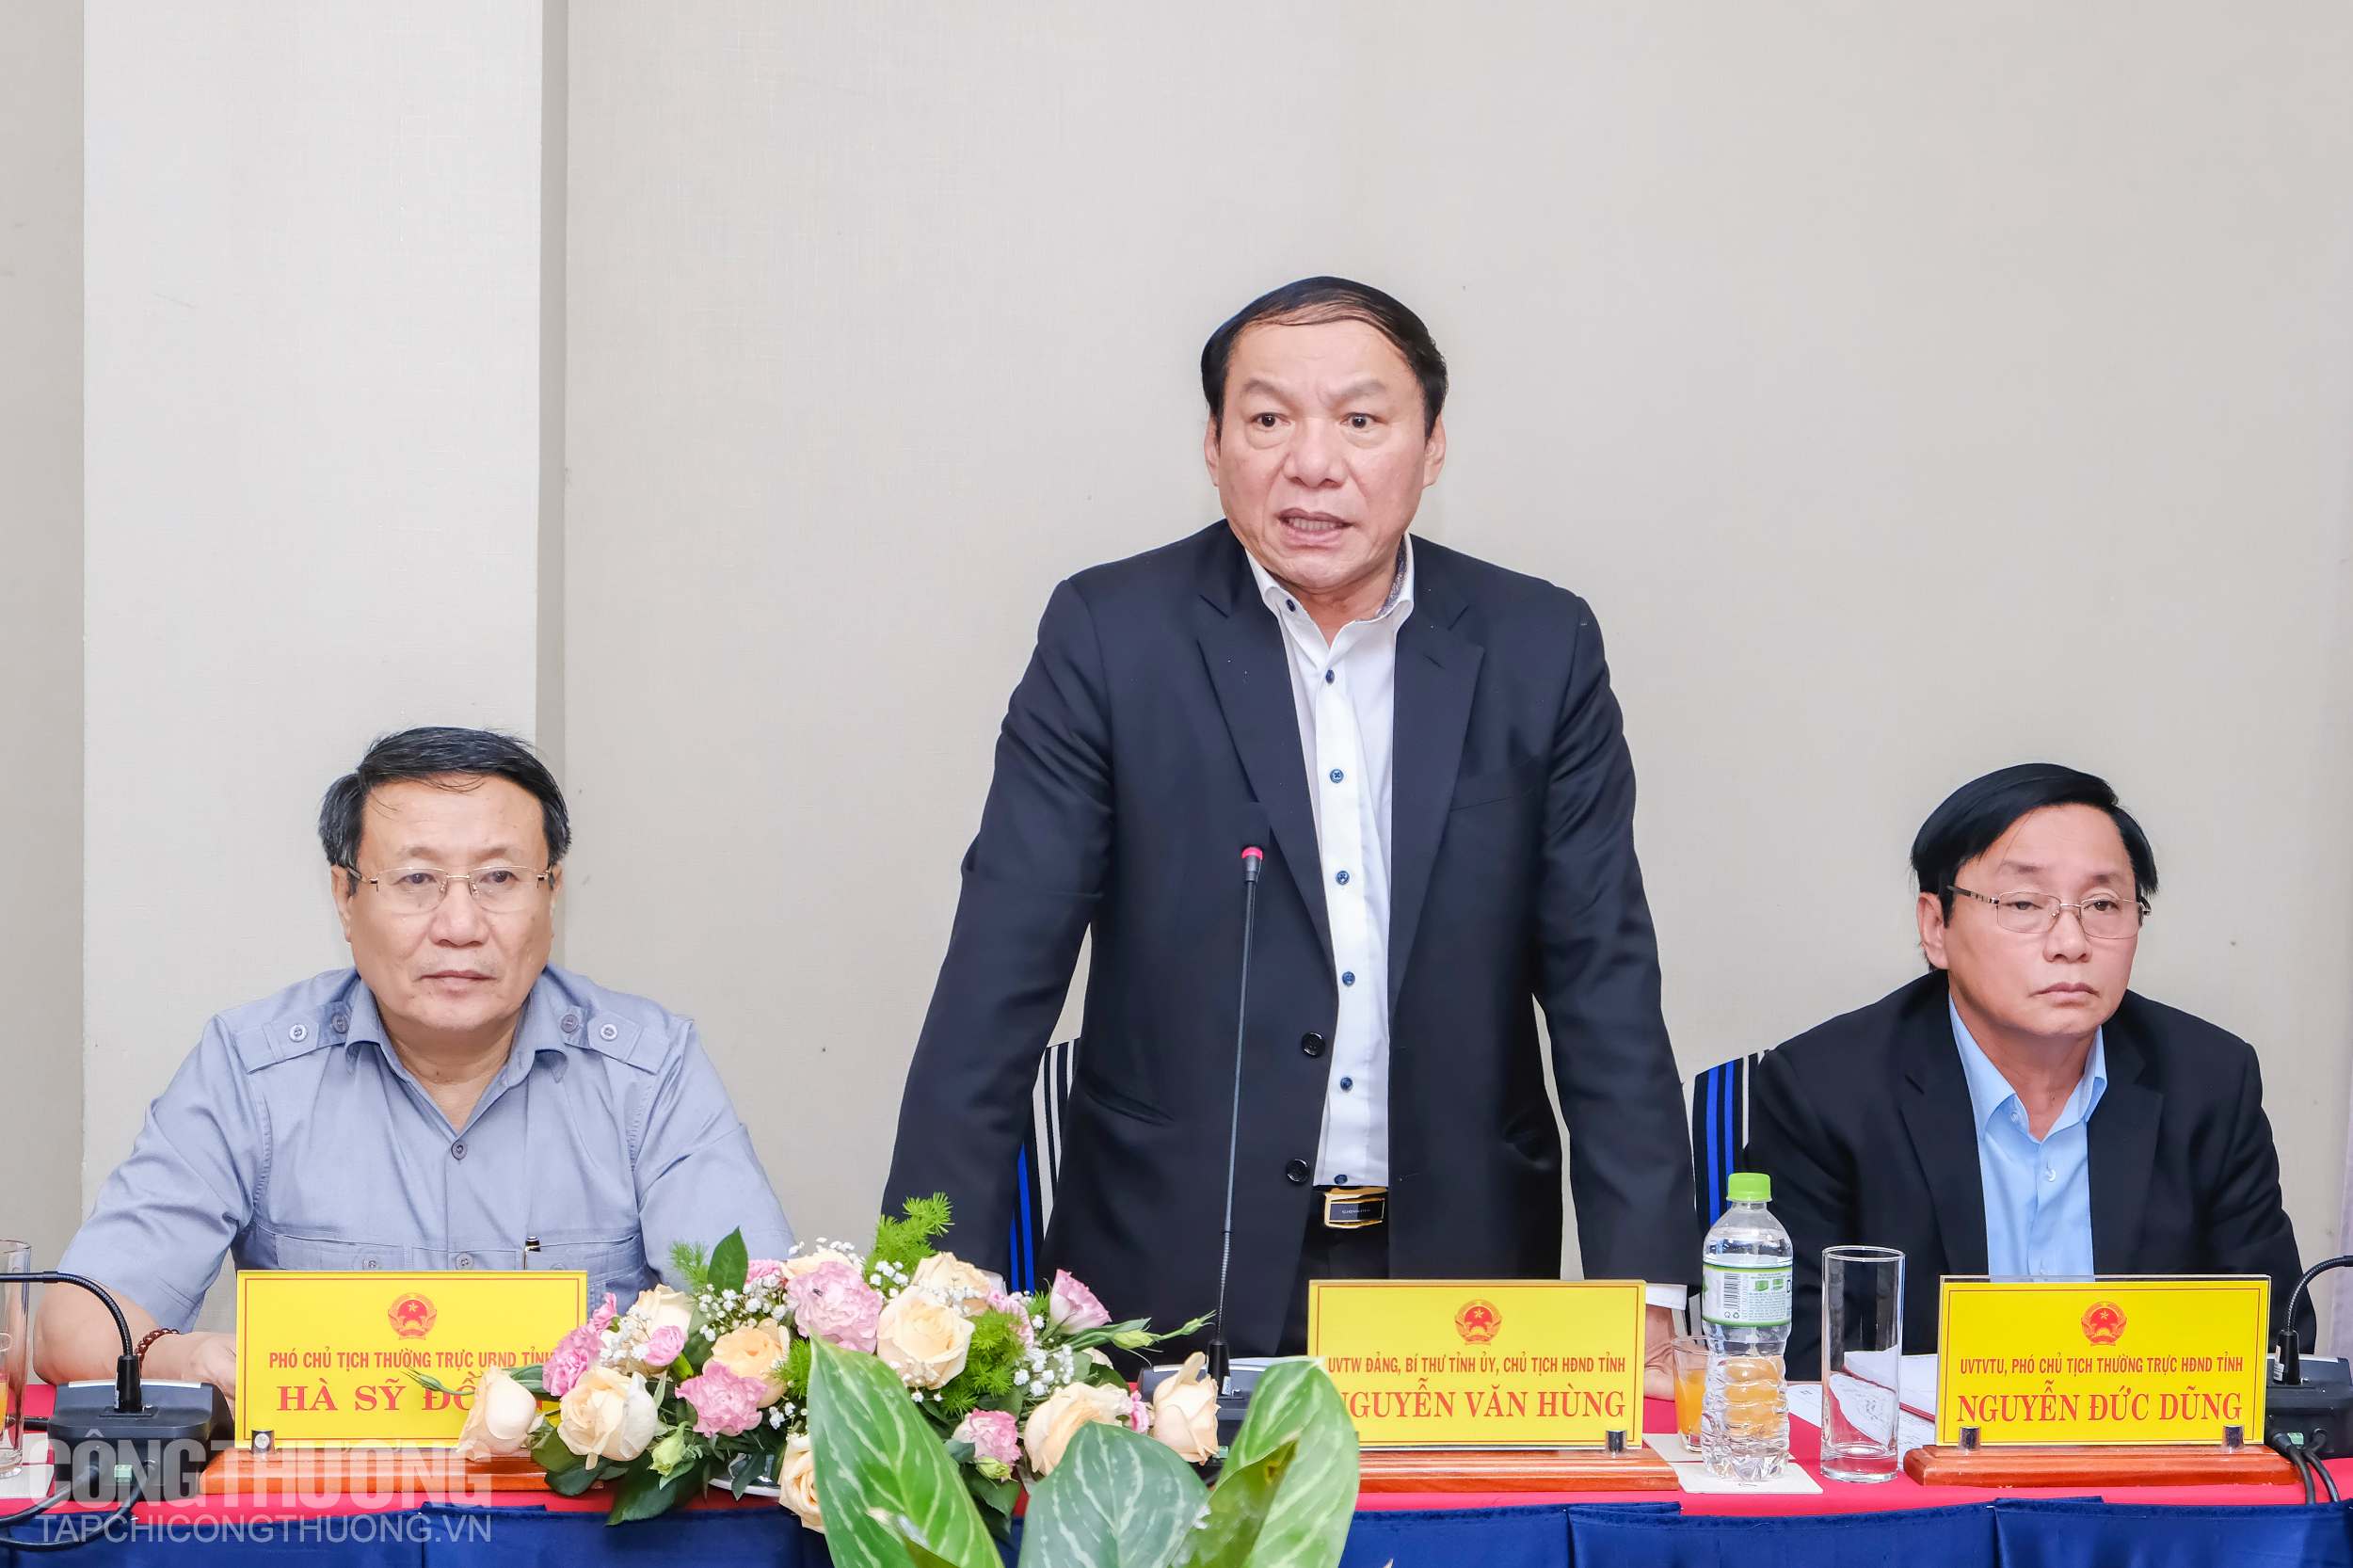 Chủ tịch UBND tỉnh Quảng Trị Nguyễn Văn Hùng chia sẻ về những tiềm năng về năng lượng sạch của tỉnh